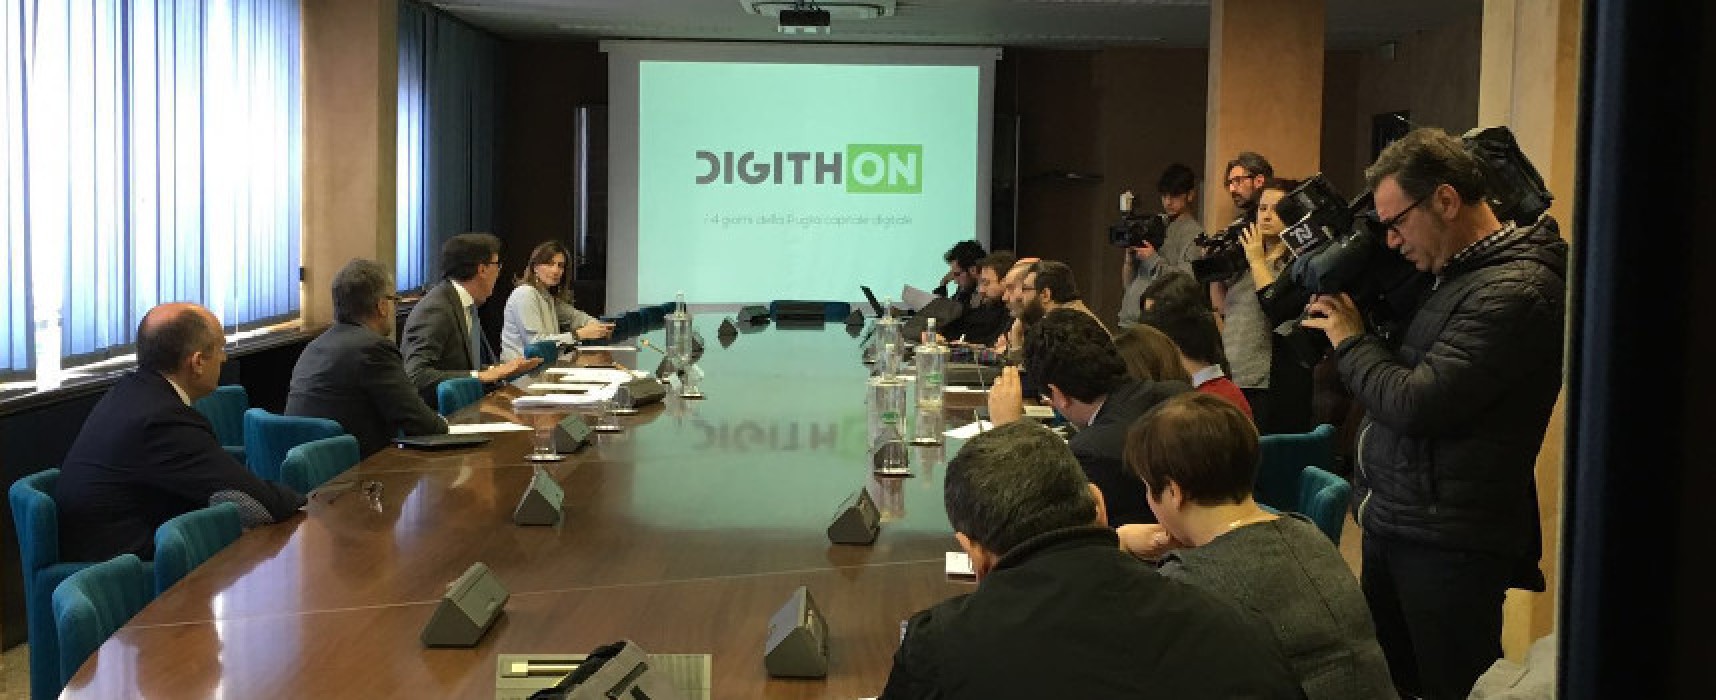 DigithON, il primo Hackathon italiano fa tappa anche a Bisceglie con numerosi ospiti illustri